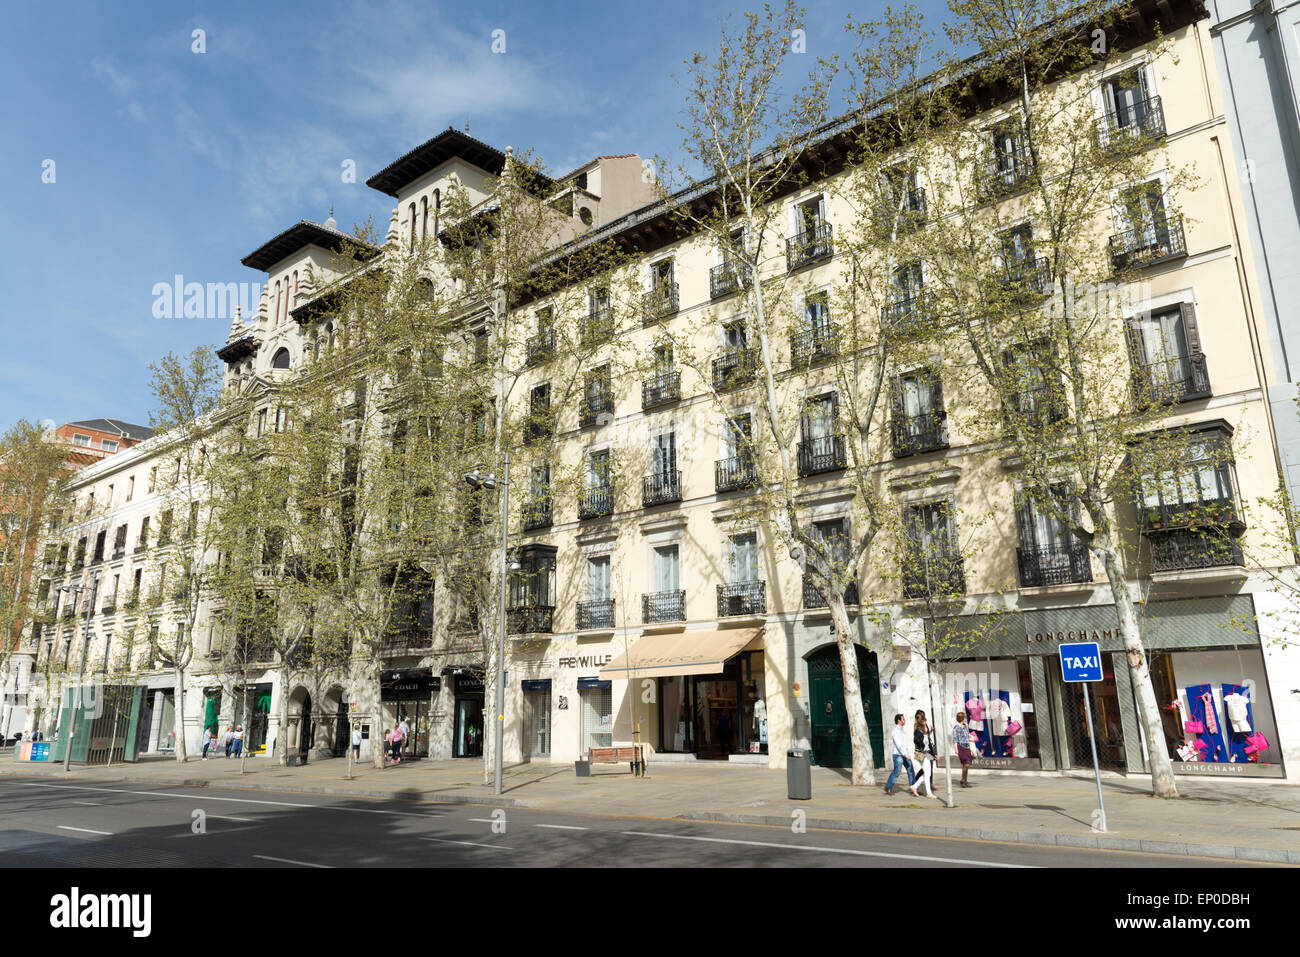 Calle Serrano dans le quartier Salamanca, Madrid, Espagne Banque D'Images